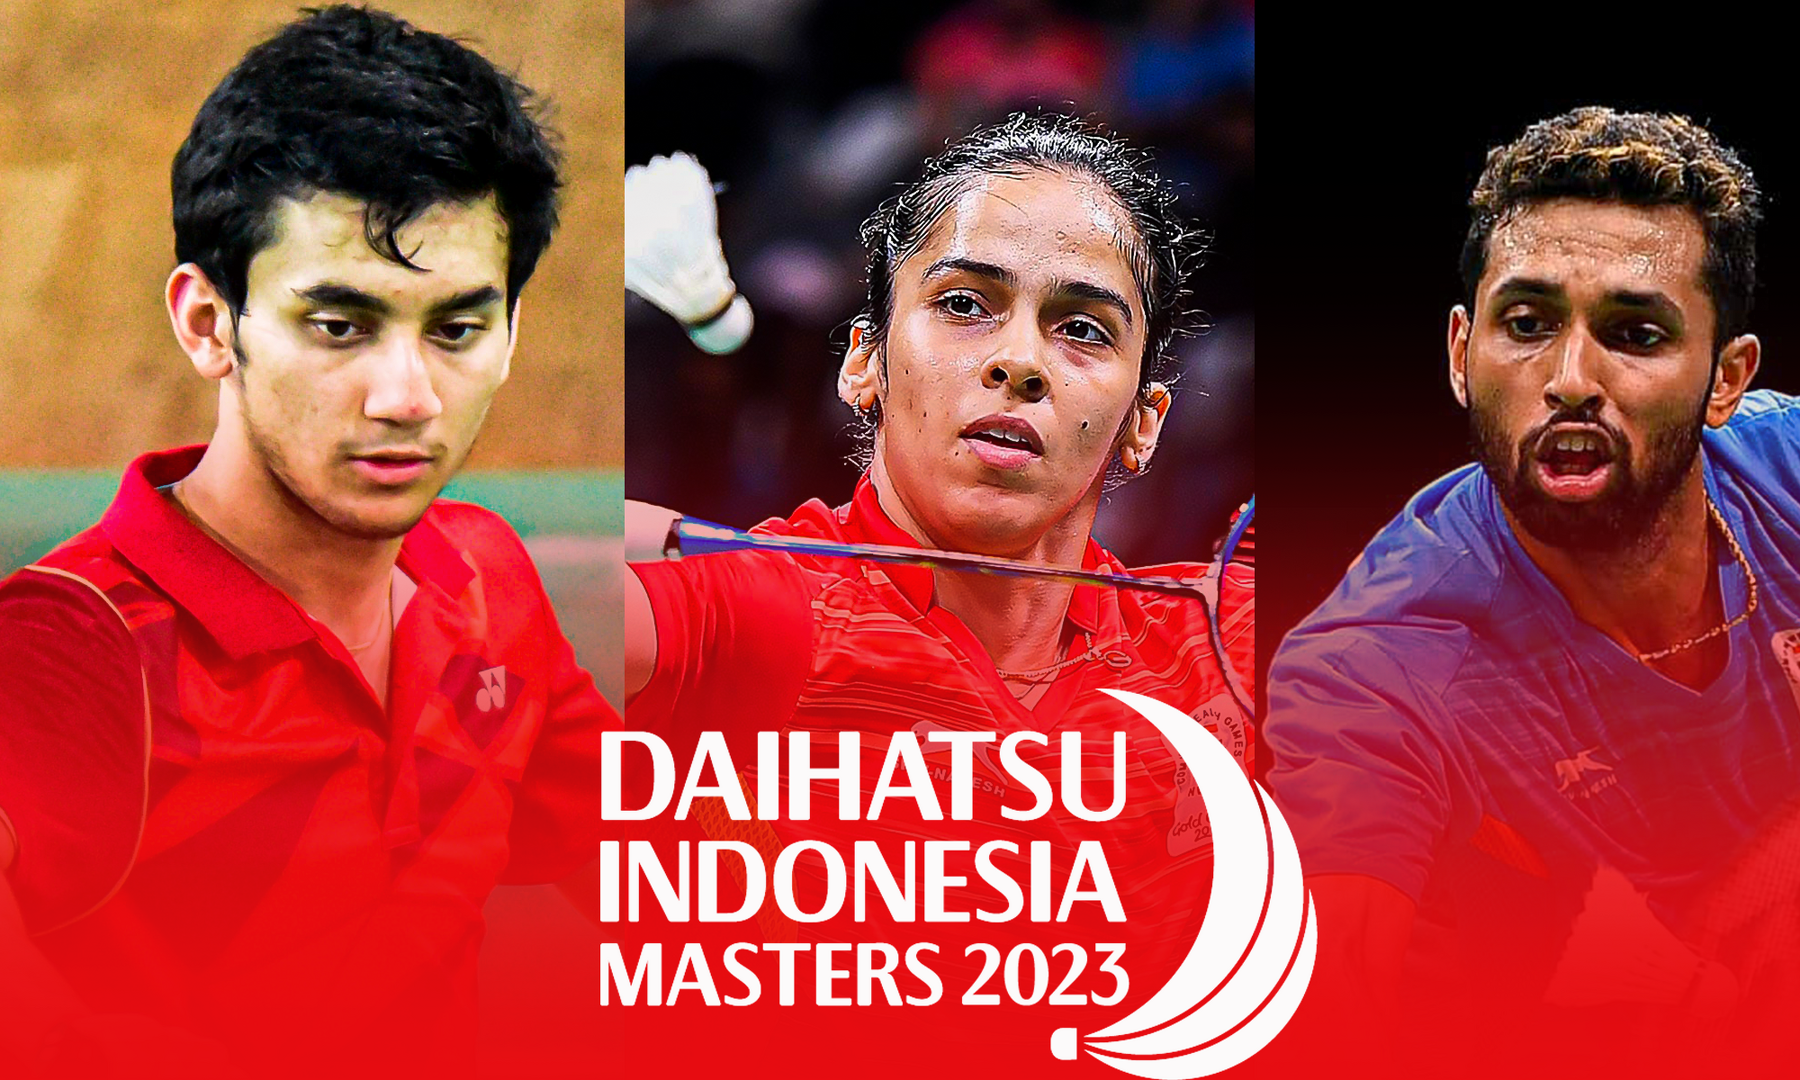 Indonesia Masters 2023 fixtures schedule